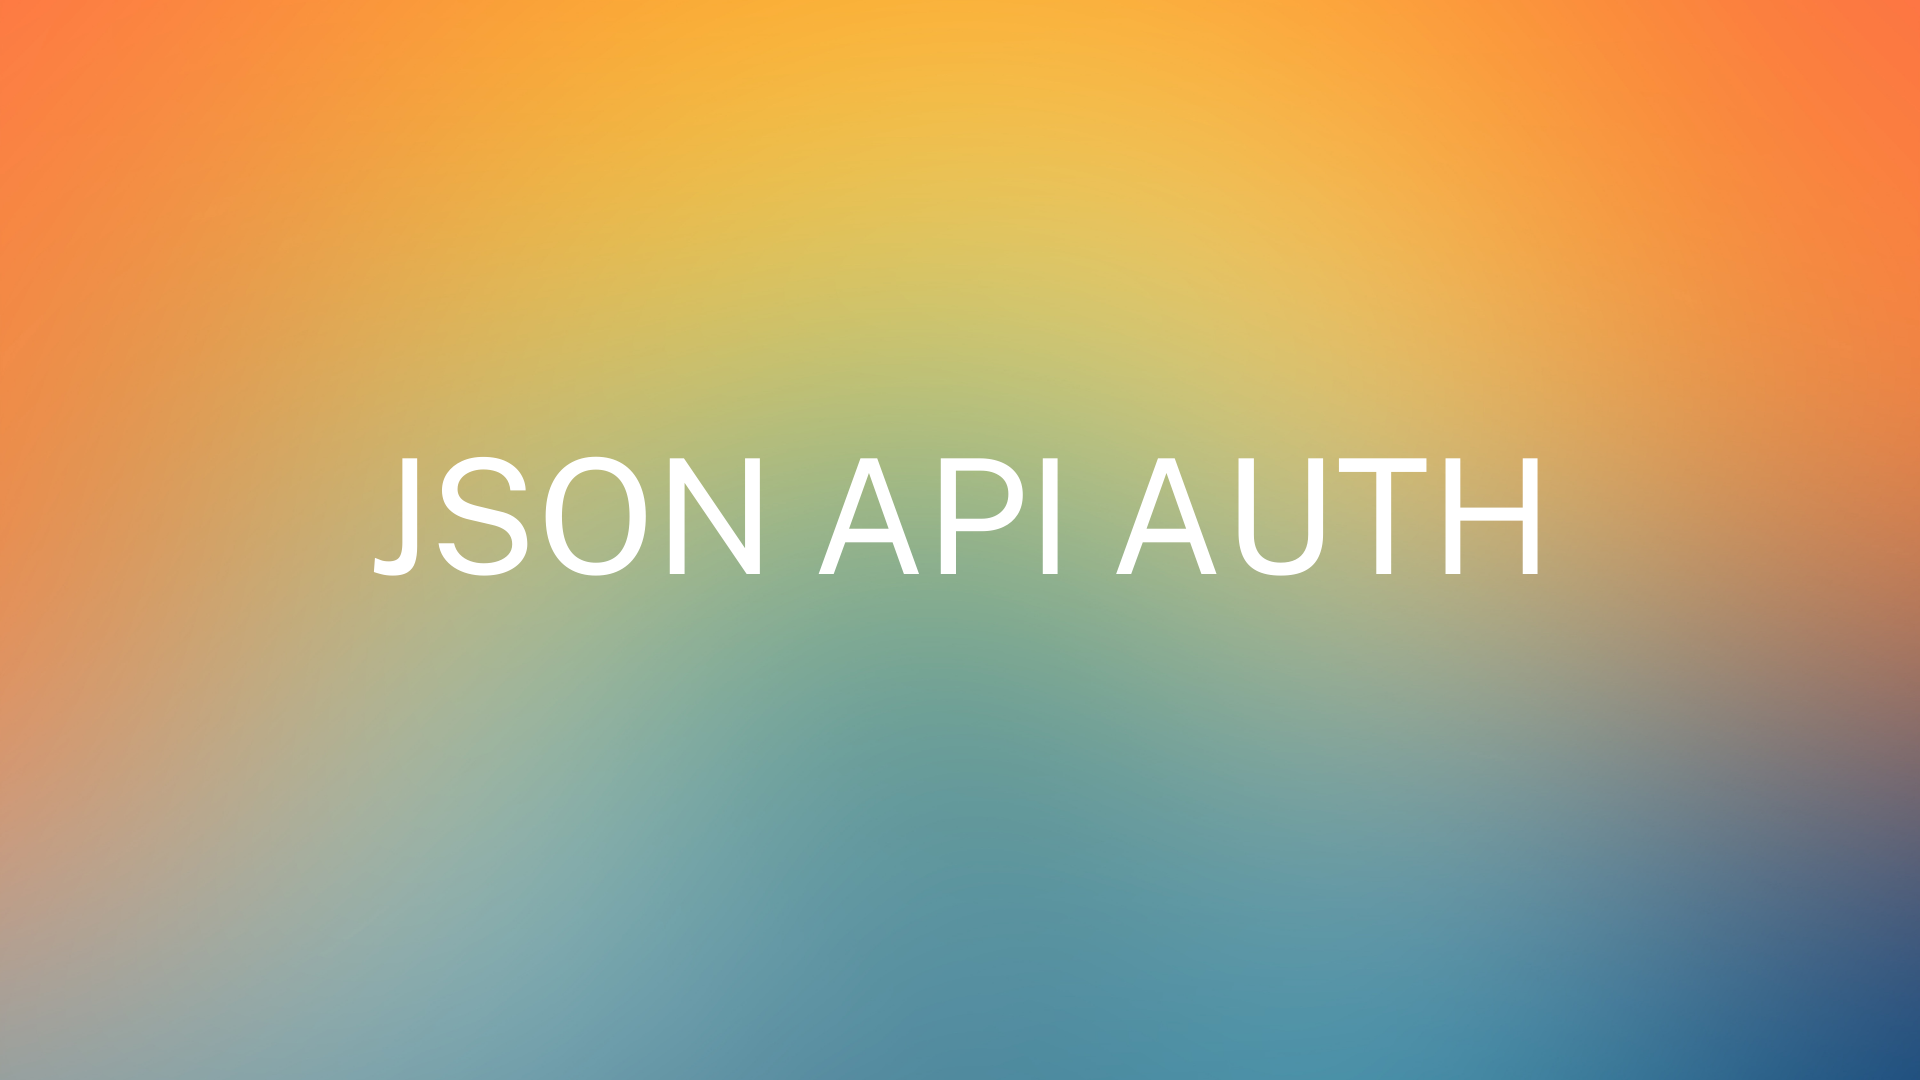 JSON API AUTH image thumbnail